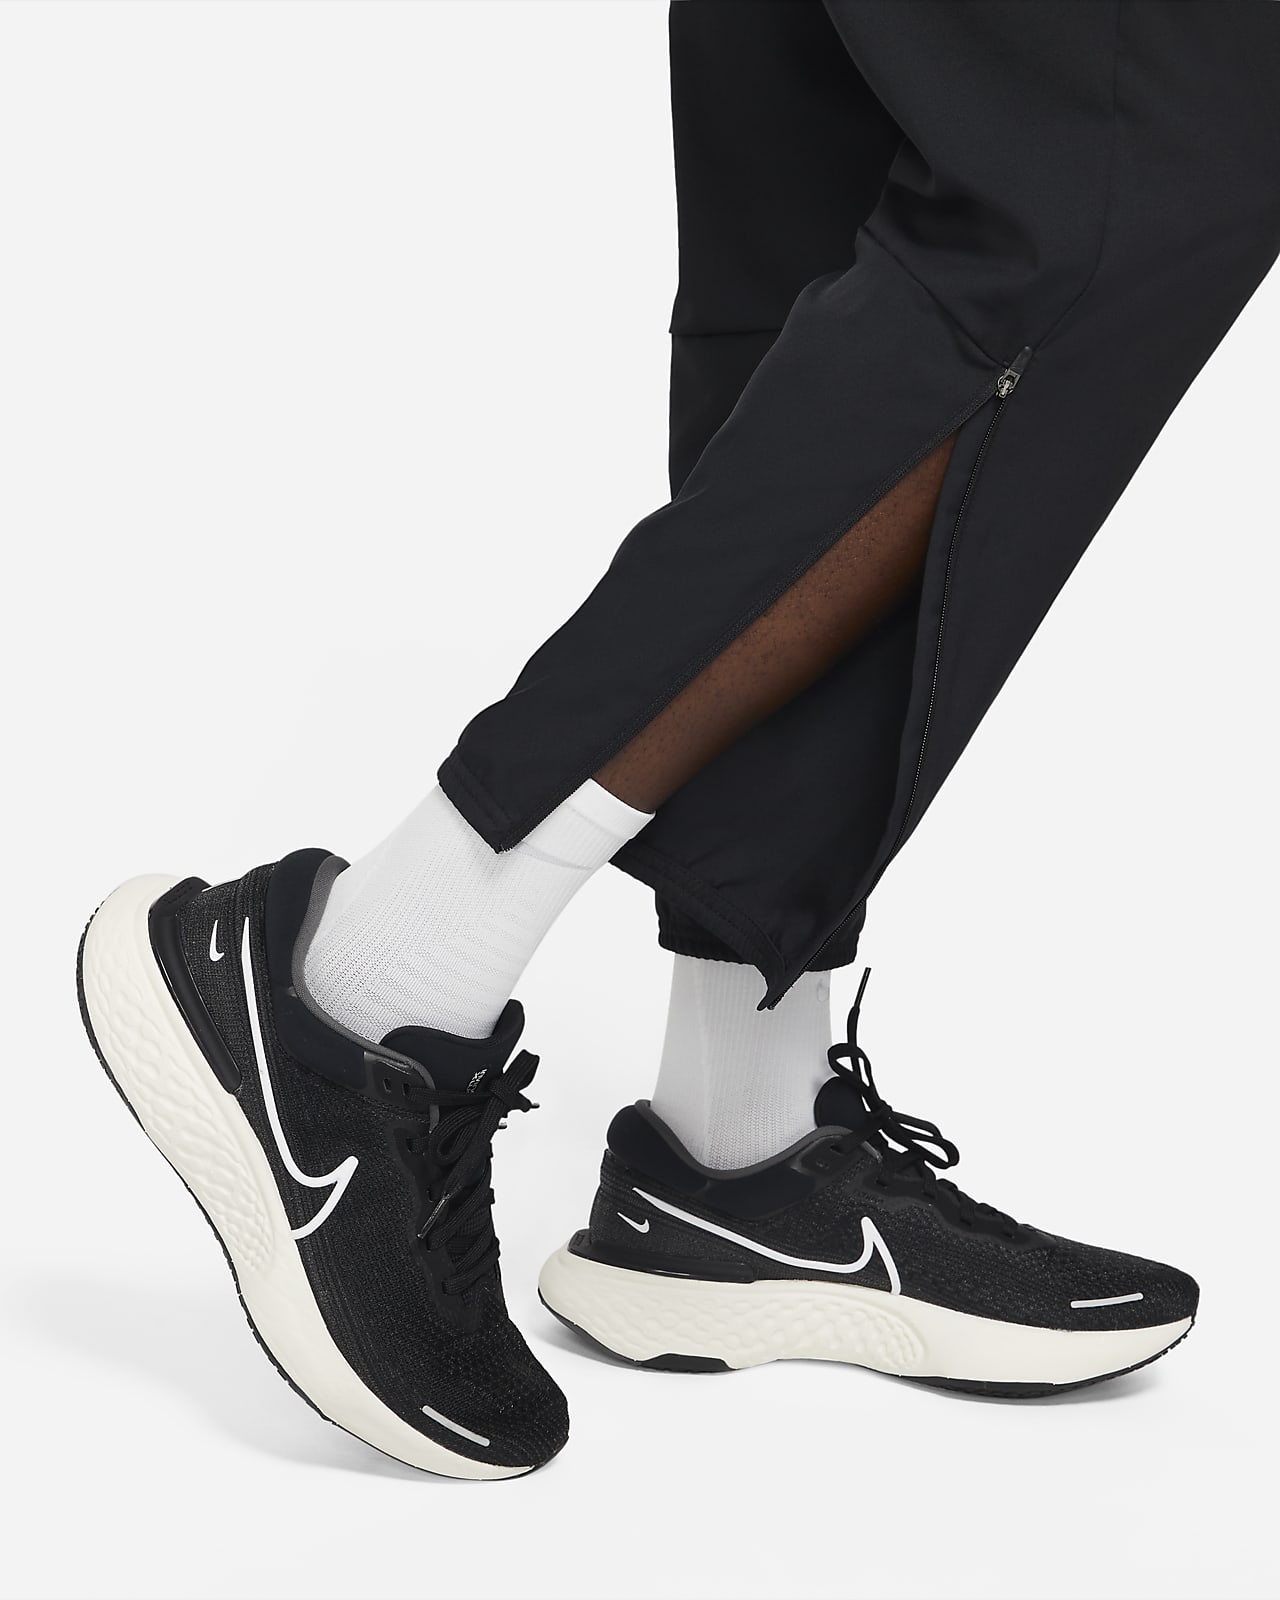 Nike Woven Bundle Feet Casual Sports Long Pants Black CJ4878-010 - KICKS  CREW